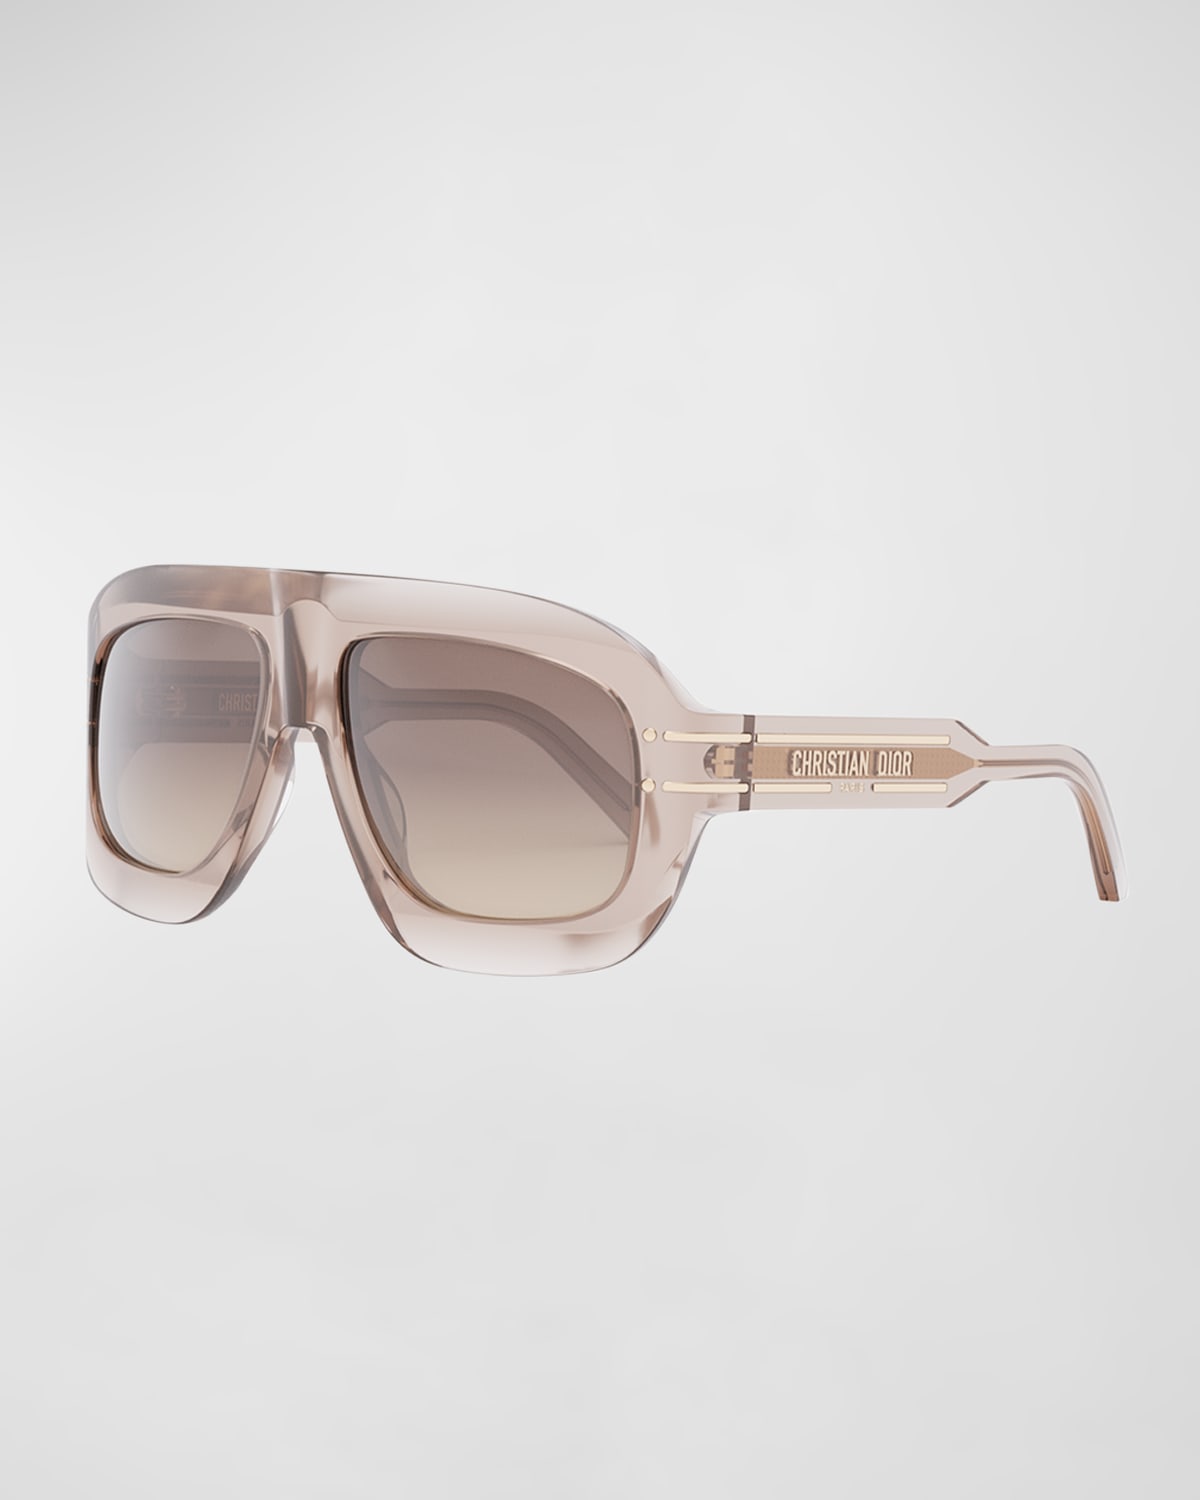 DiorSignature M1U Sunglasses